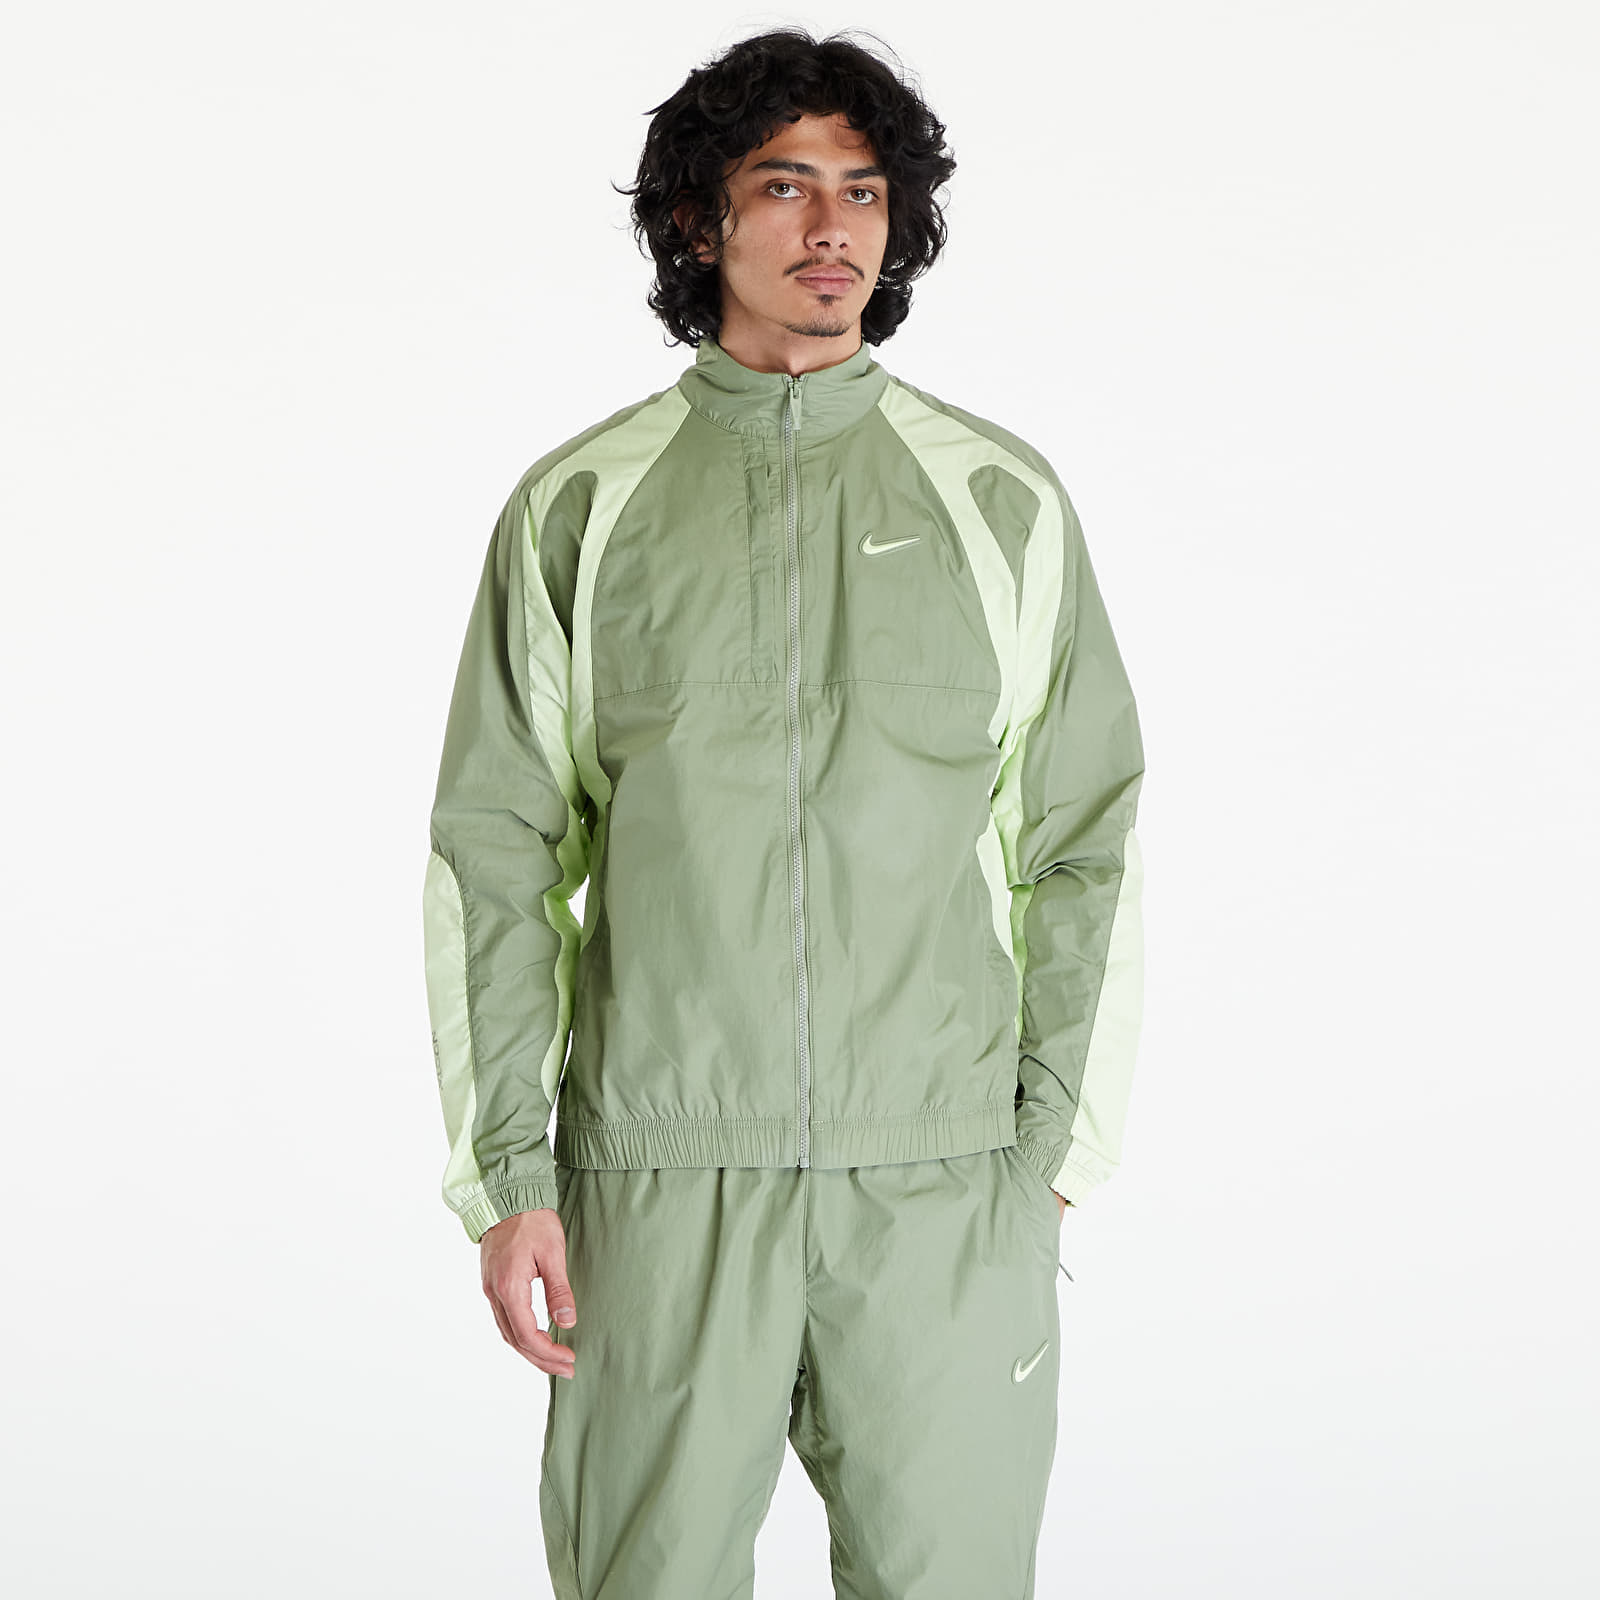 Якета Nike x NOCTA Men’s Woven Track Jacket Oil Green/ Lt Liquid Lime/ Lt Liquid Lime